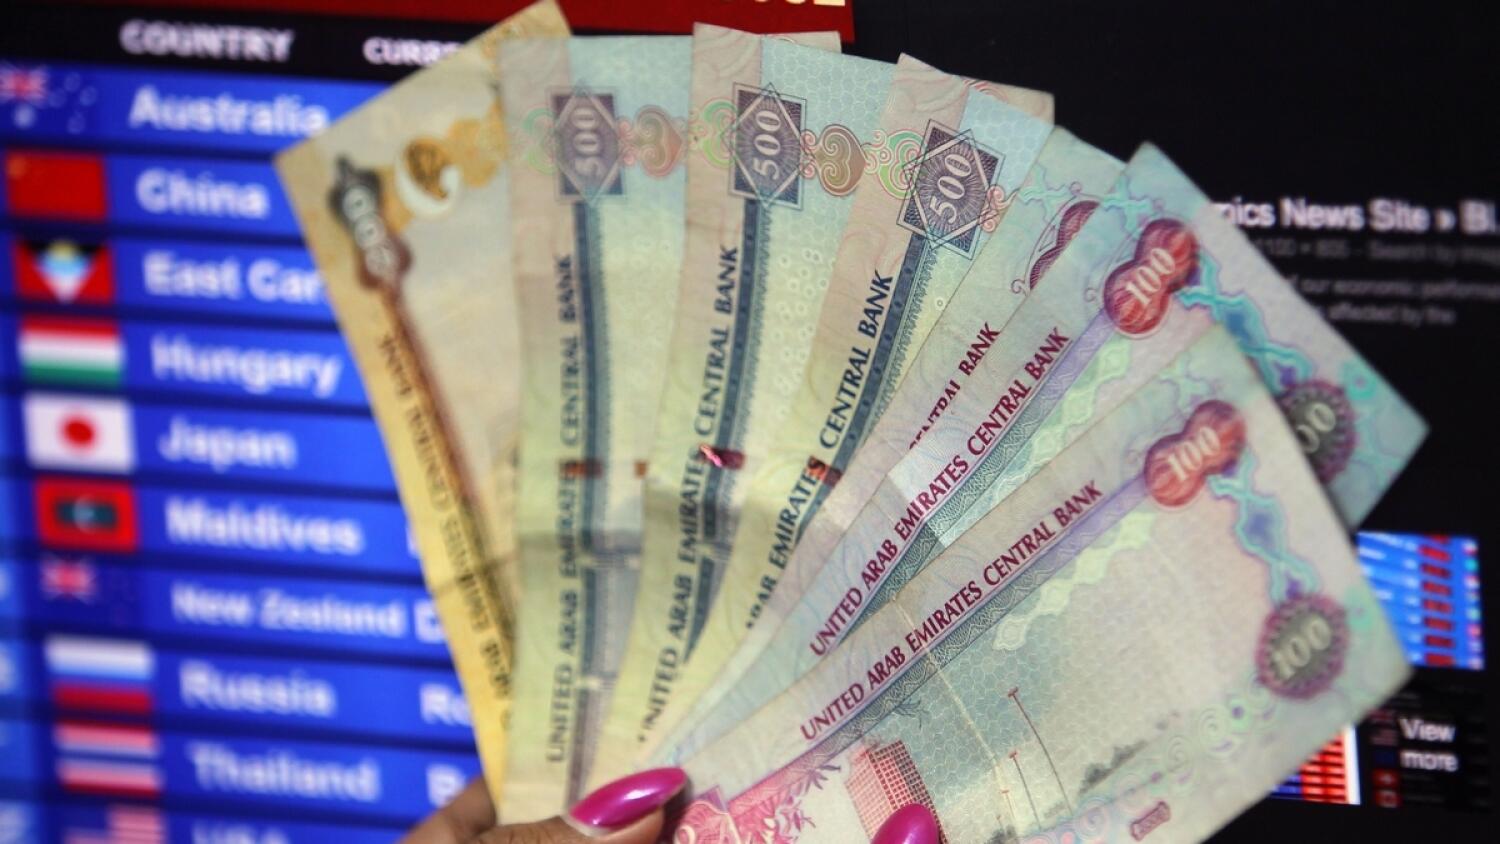 Uae taxes. Обмен валюты в ОАЭ. Обменник валют в Дубае. Обменные пункты валюты в Дубае. Пенсия в ОАЭ.